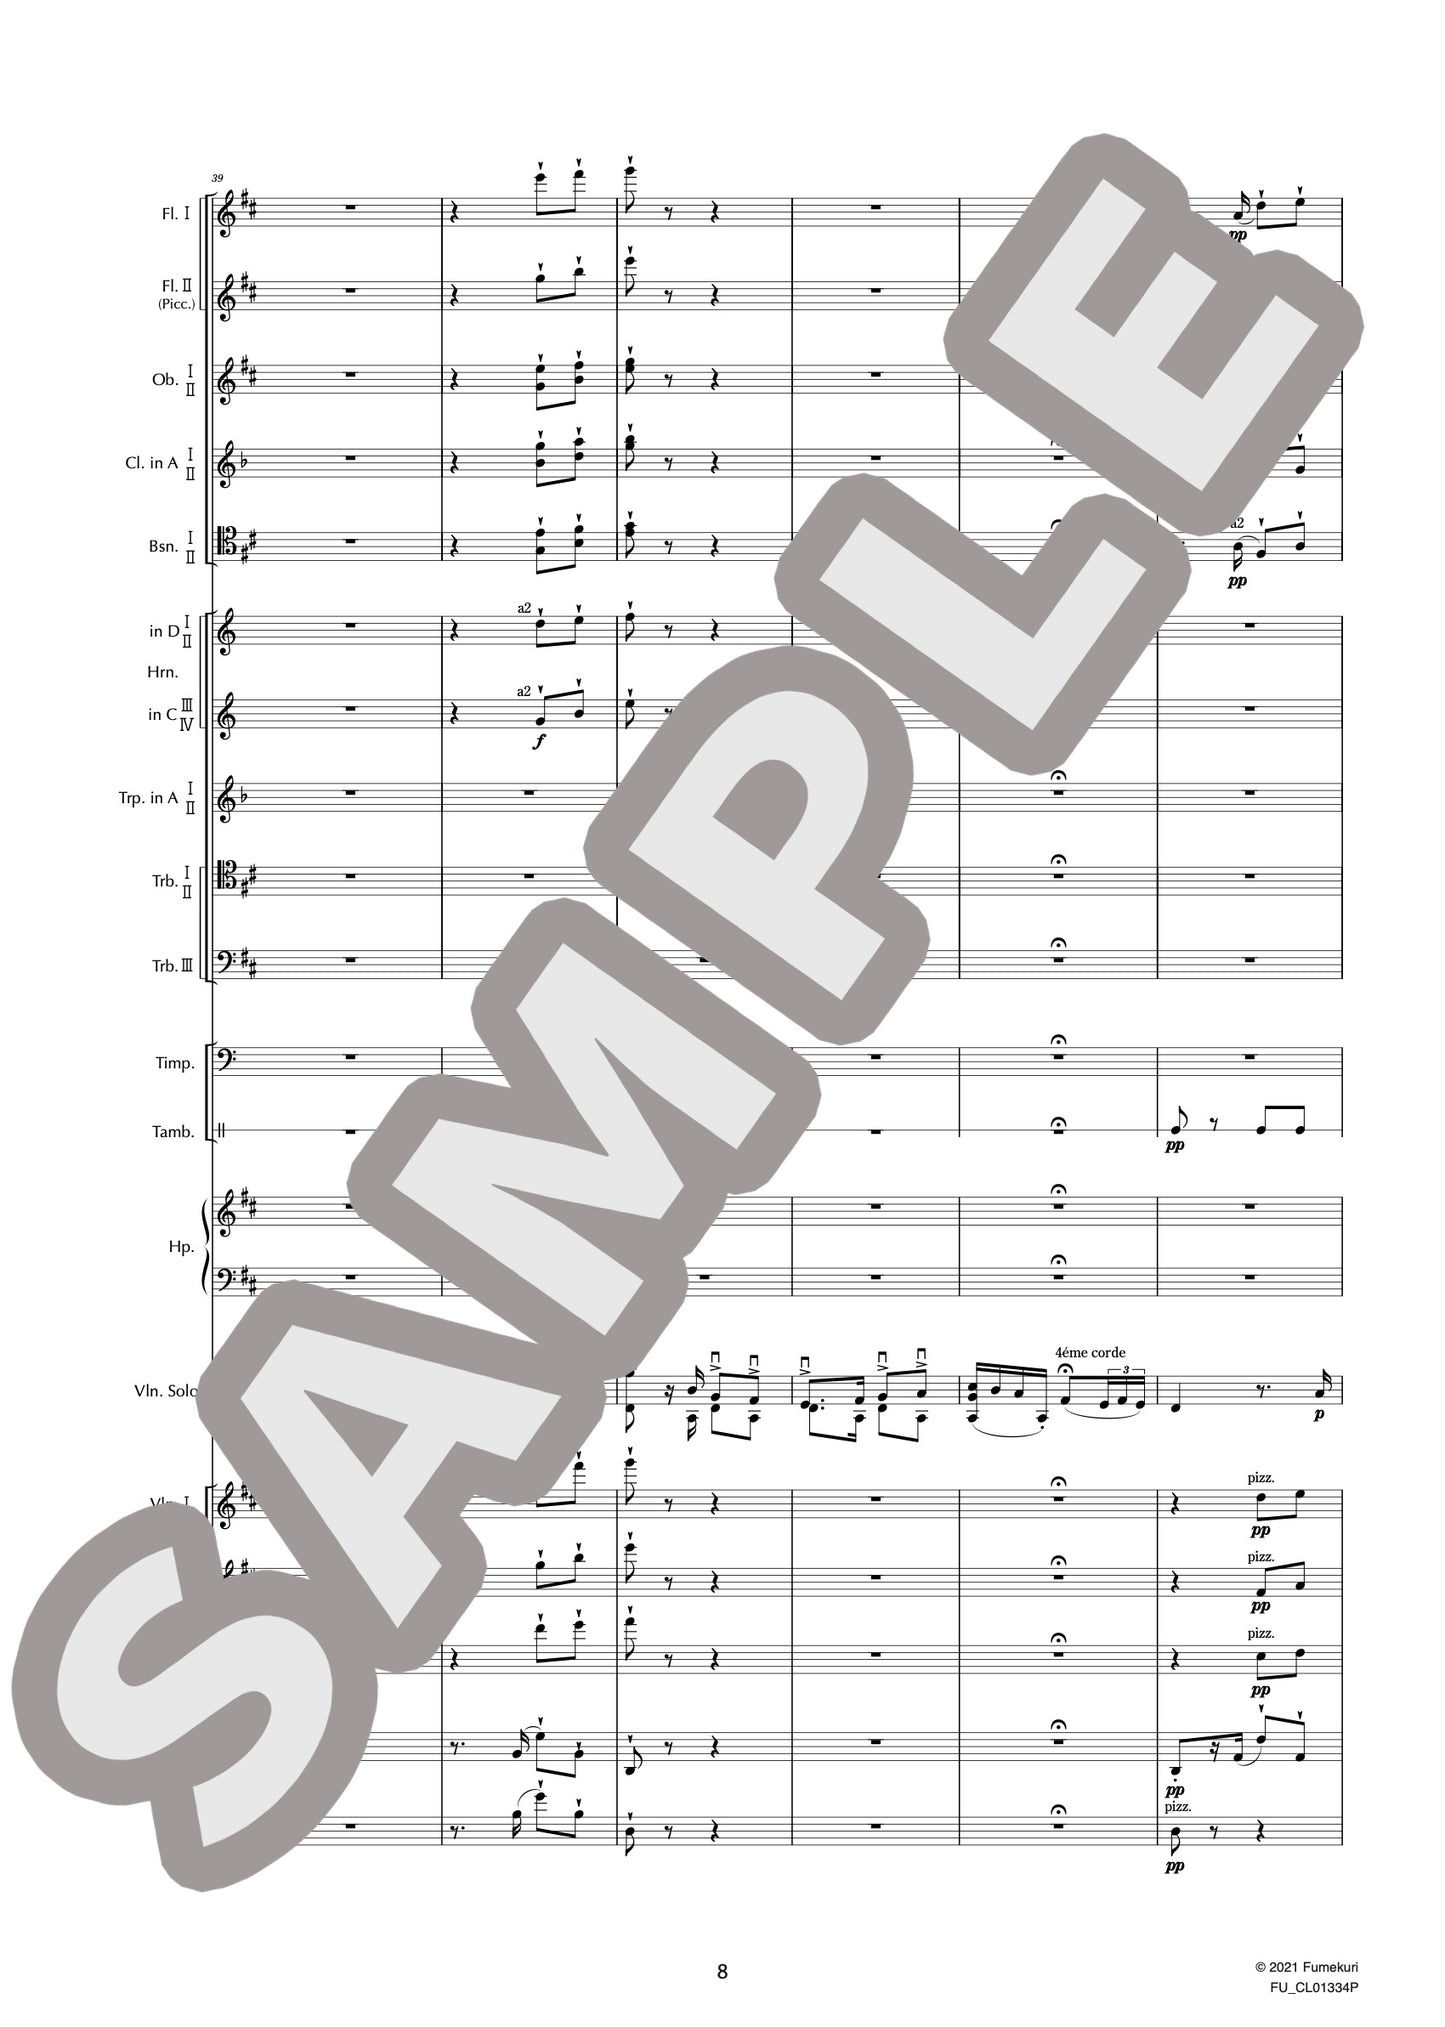 カルメン幻想曲 作品25 I. Moderato（SARASATE) / クラシック・オリジナル楽曲【中上級】